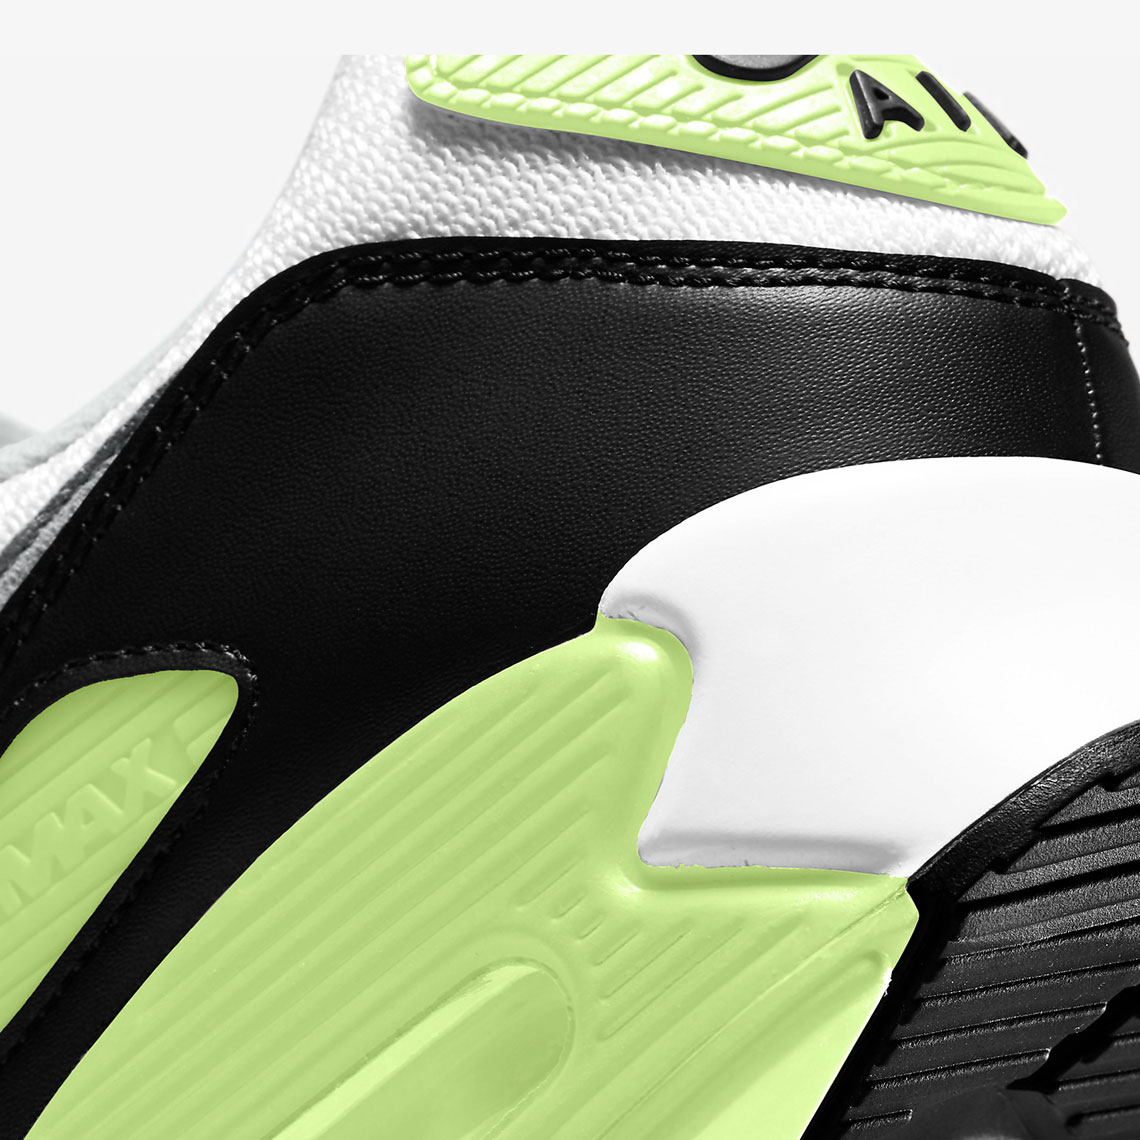 Nike Air Max 90 OG CW5458-100 | SneakerNews.com